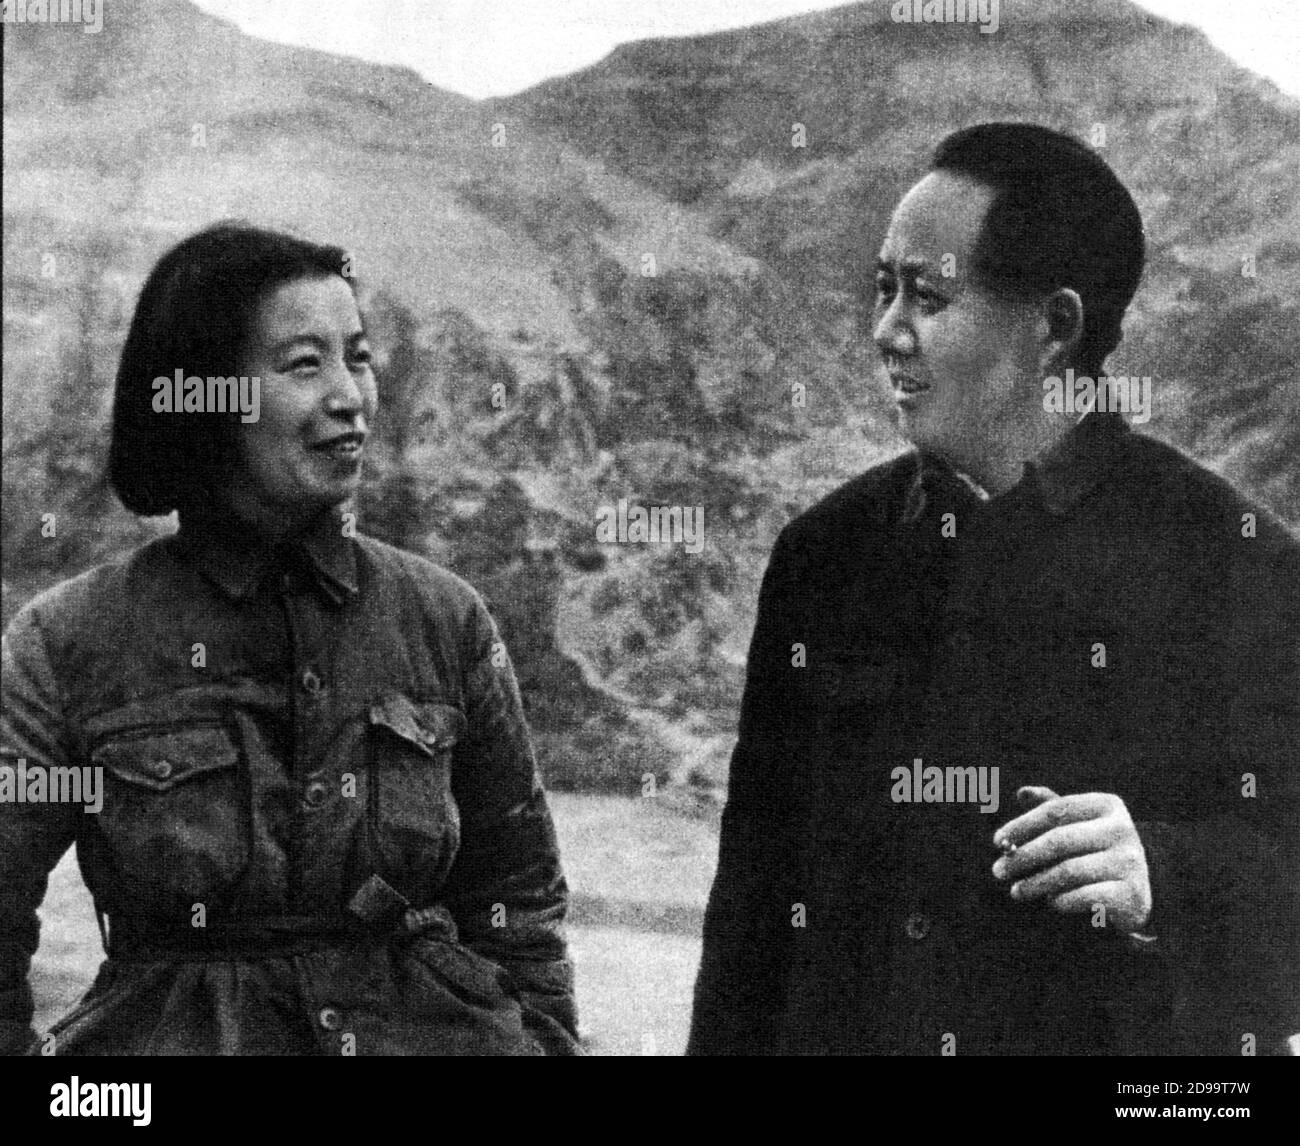 1944 , CHINA : The chinese politician leader MAO TSE-TUNG with the  wife Chiang-Ching - POLITICO - COMUNISTA - COMUNISMO - comunist - comunism - dittatore - dictator - rivoluzionario - revolutionary - revolution - rivoluzione  - TZE-tung - Tze tung - Tze-thung  ----  Archivio GBB Stock Photo